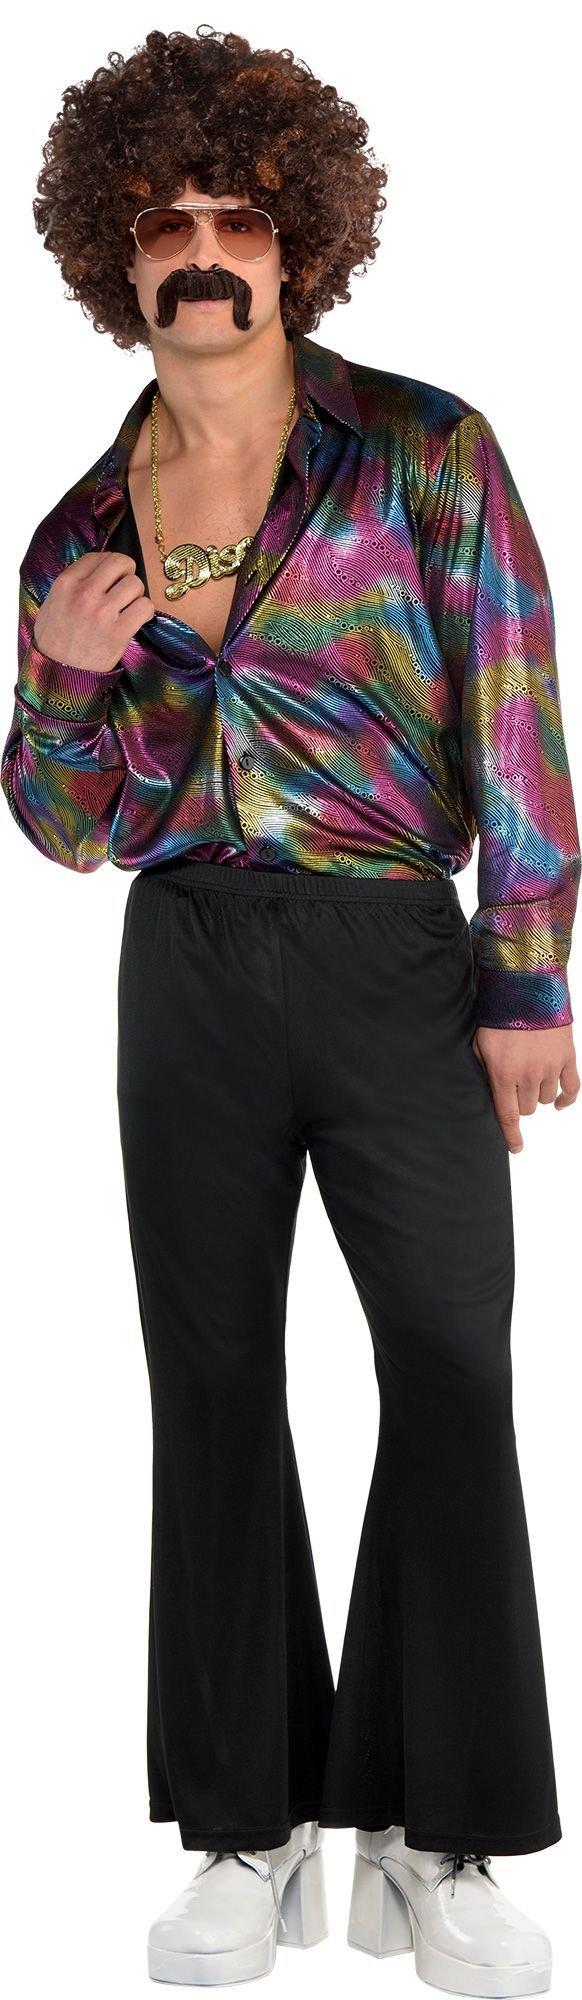 Disco Shirt for Men